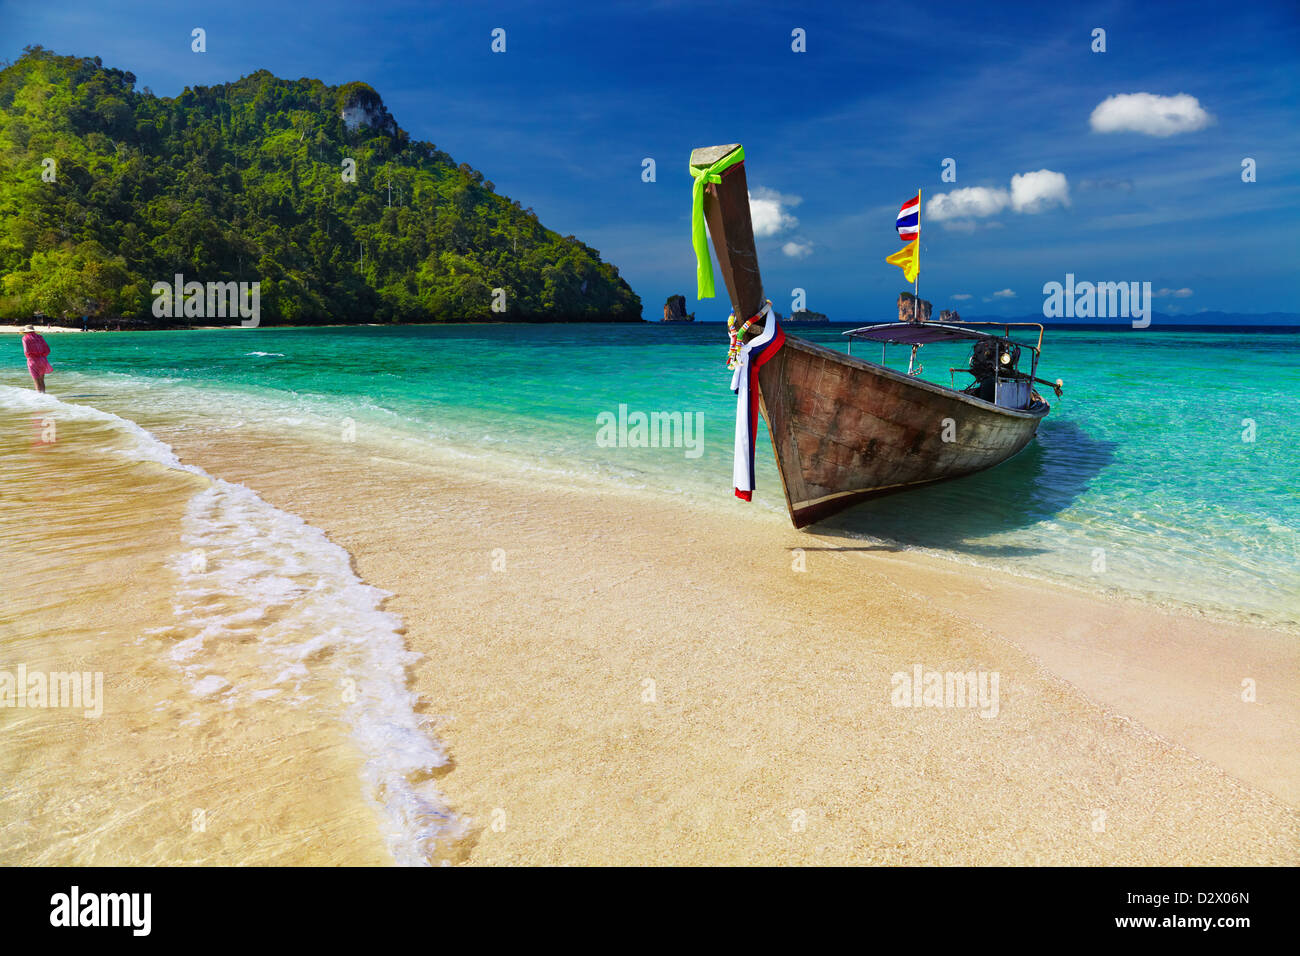 Canoa, tropical, playa, bañera, Isla del Mar de Andaman, Tailandia Foto de stock